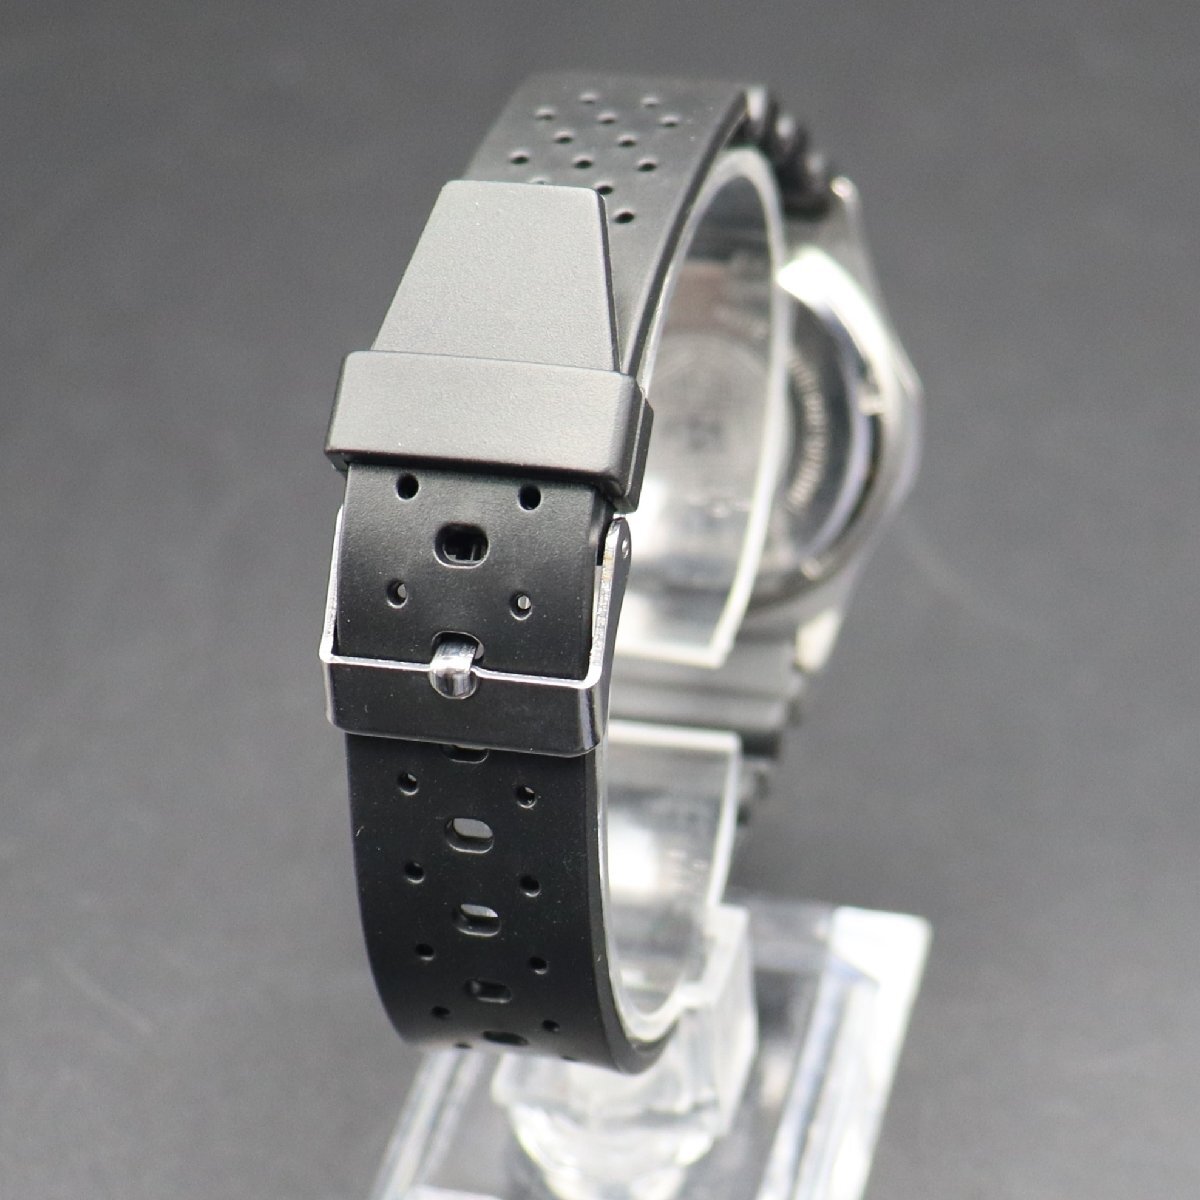 TAG HEUER タグホイヤー プロフェッショナル 2000 クォーツ 200M防水 964.013 デイト コンビカラー スイス 新品ラバーベルト メンズ腕時計の画像5